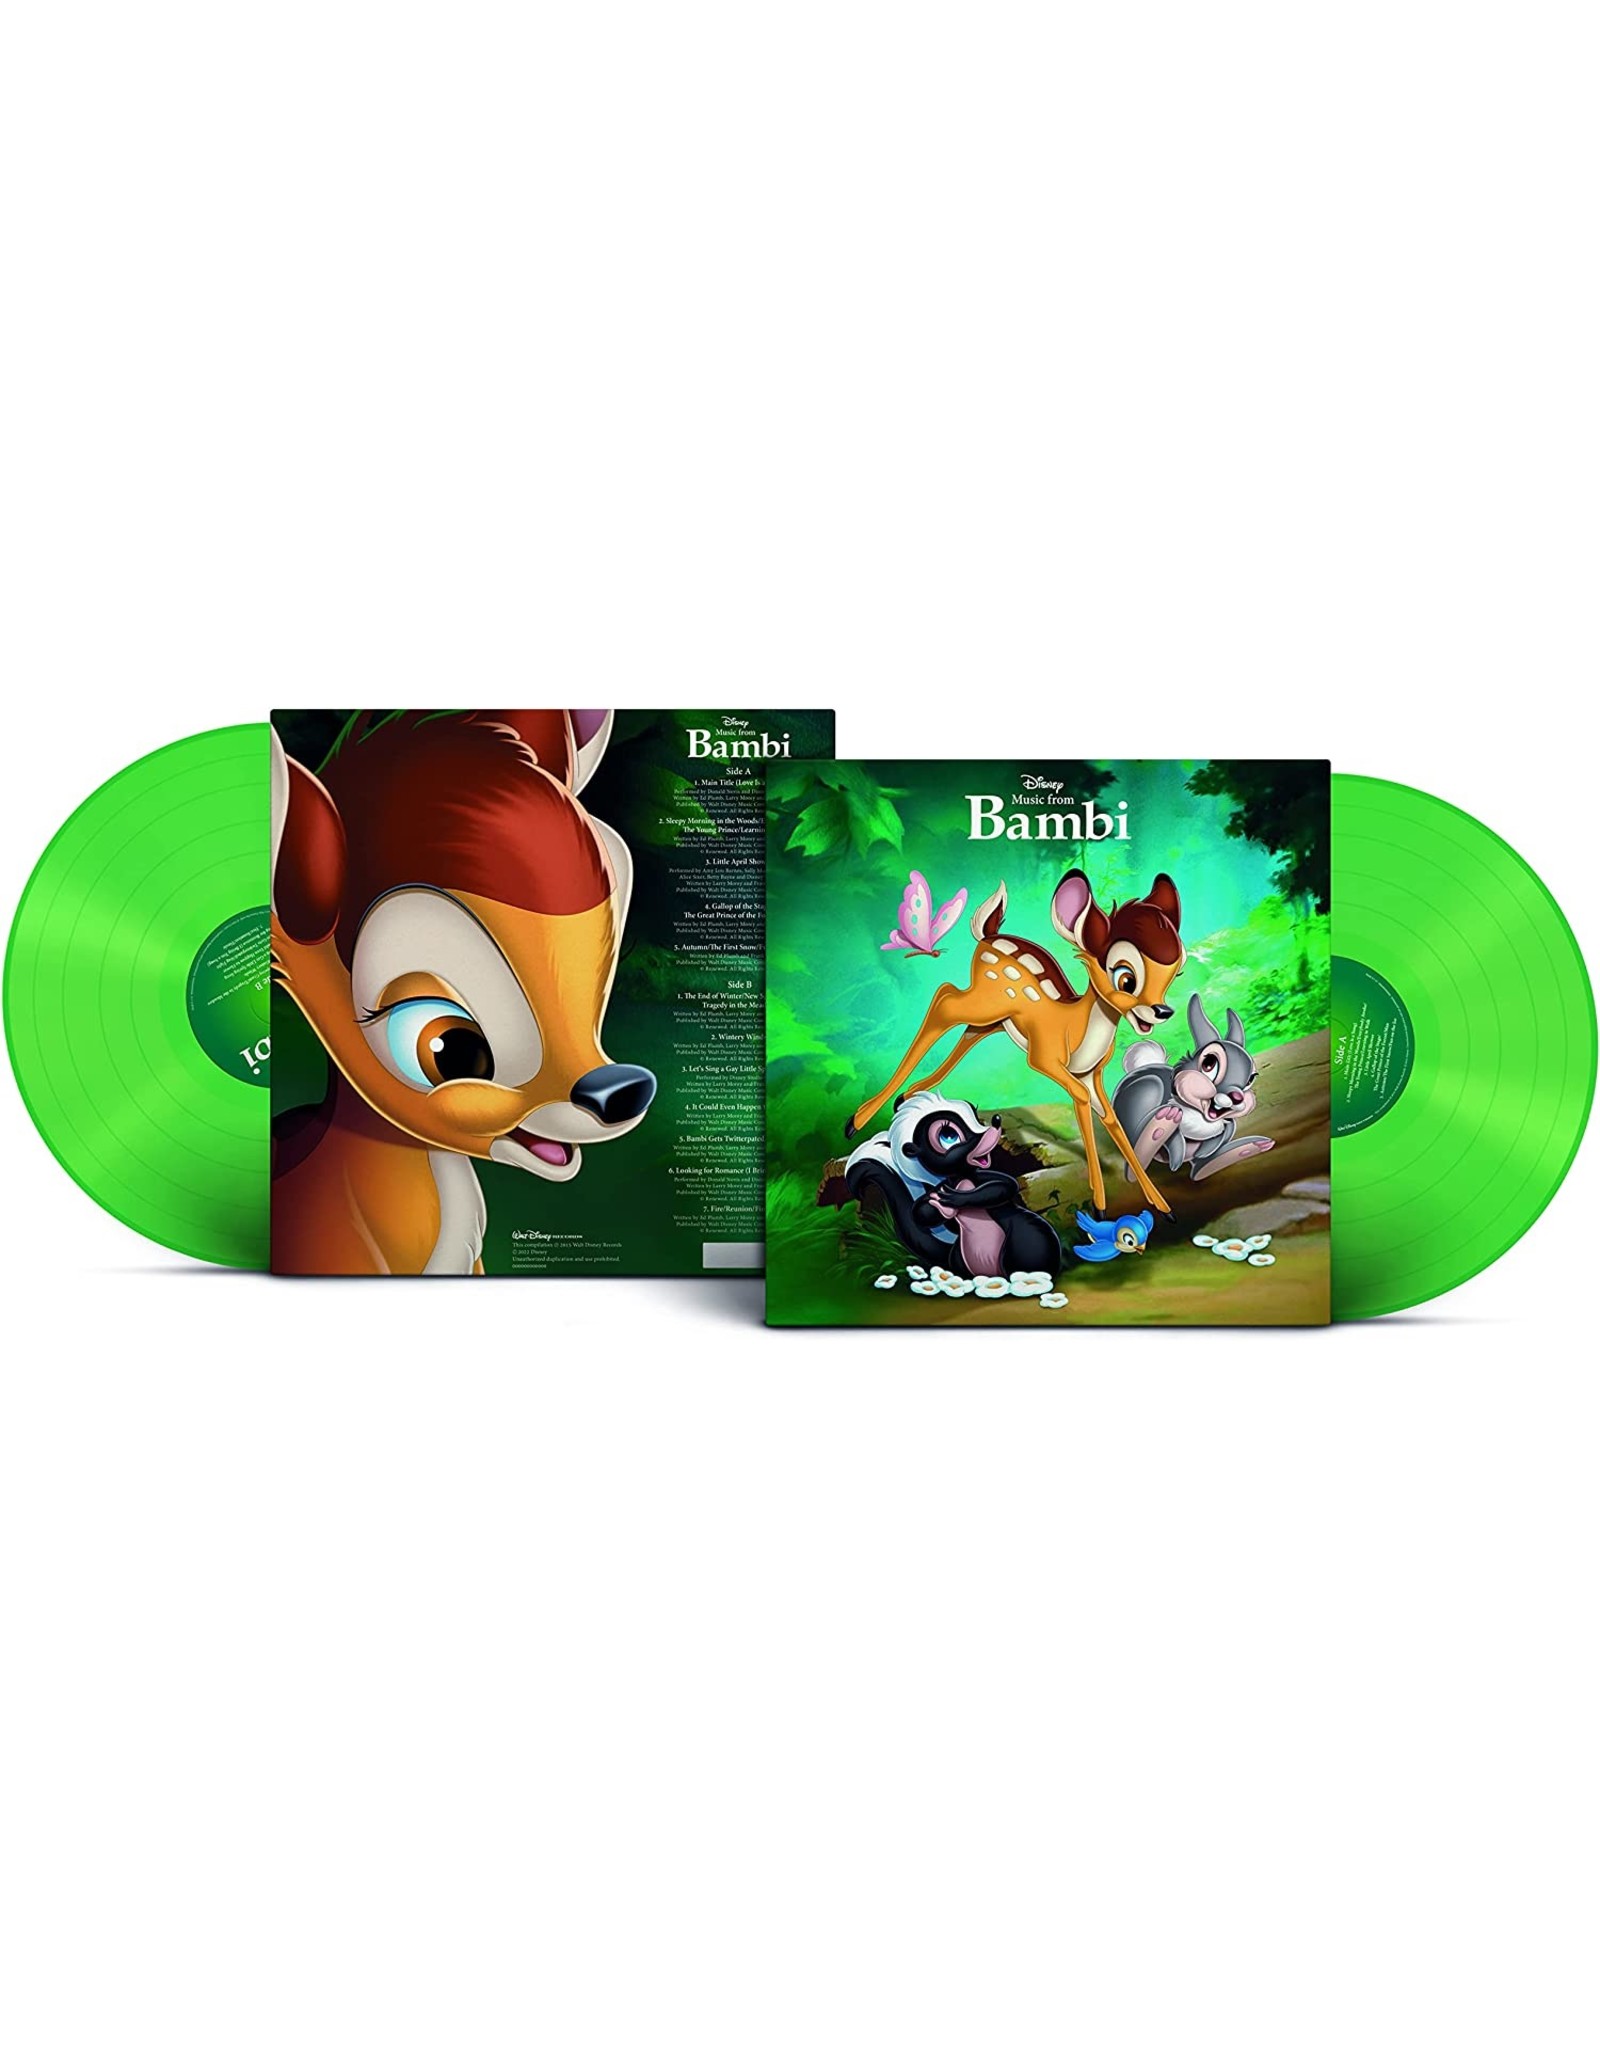 Disney - Bambi (Music From The Film) [Green Vinyl]